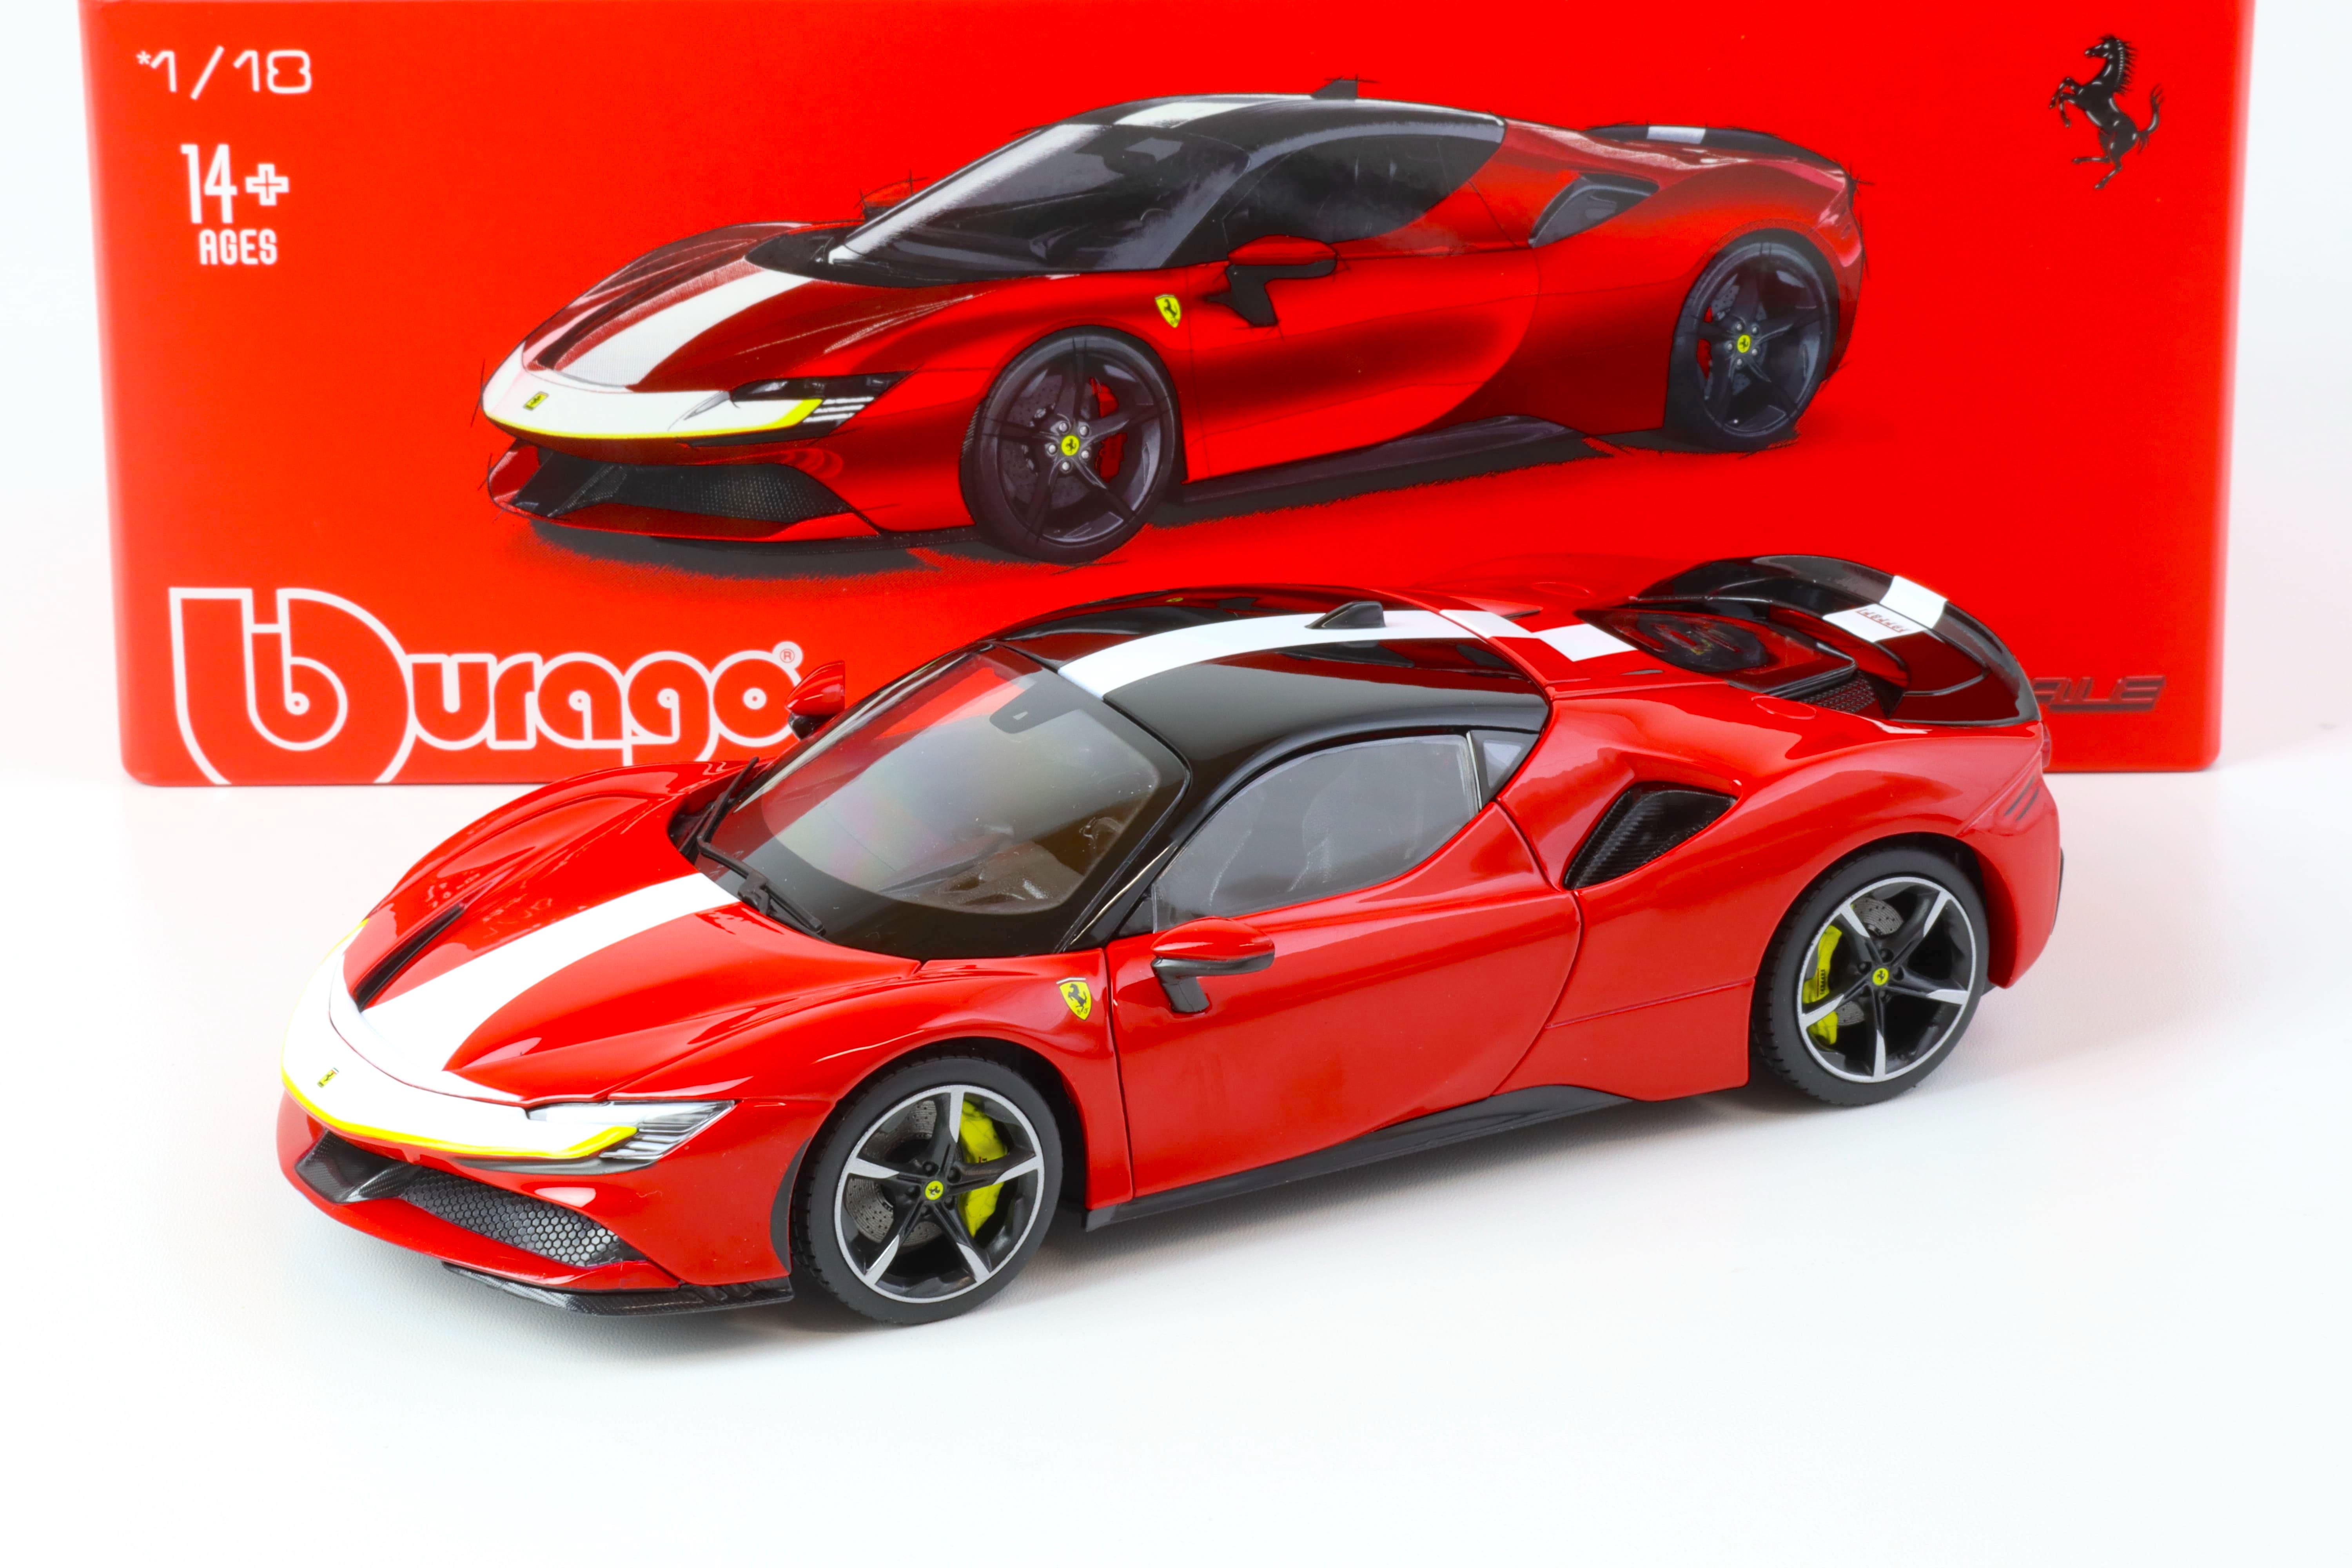 1:18 Bburago Signature Ferrari SF90 Stradale Assetto Fiorano 2020 red